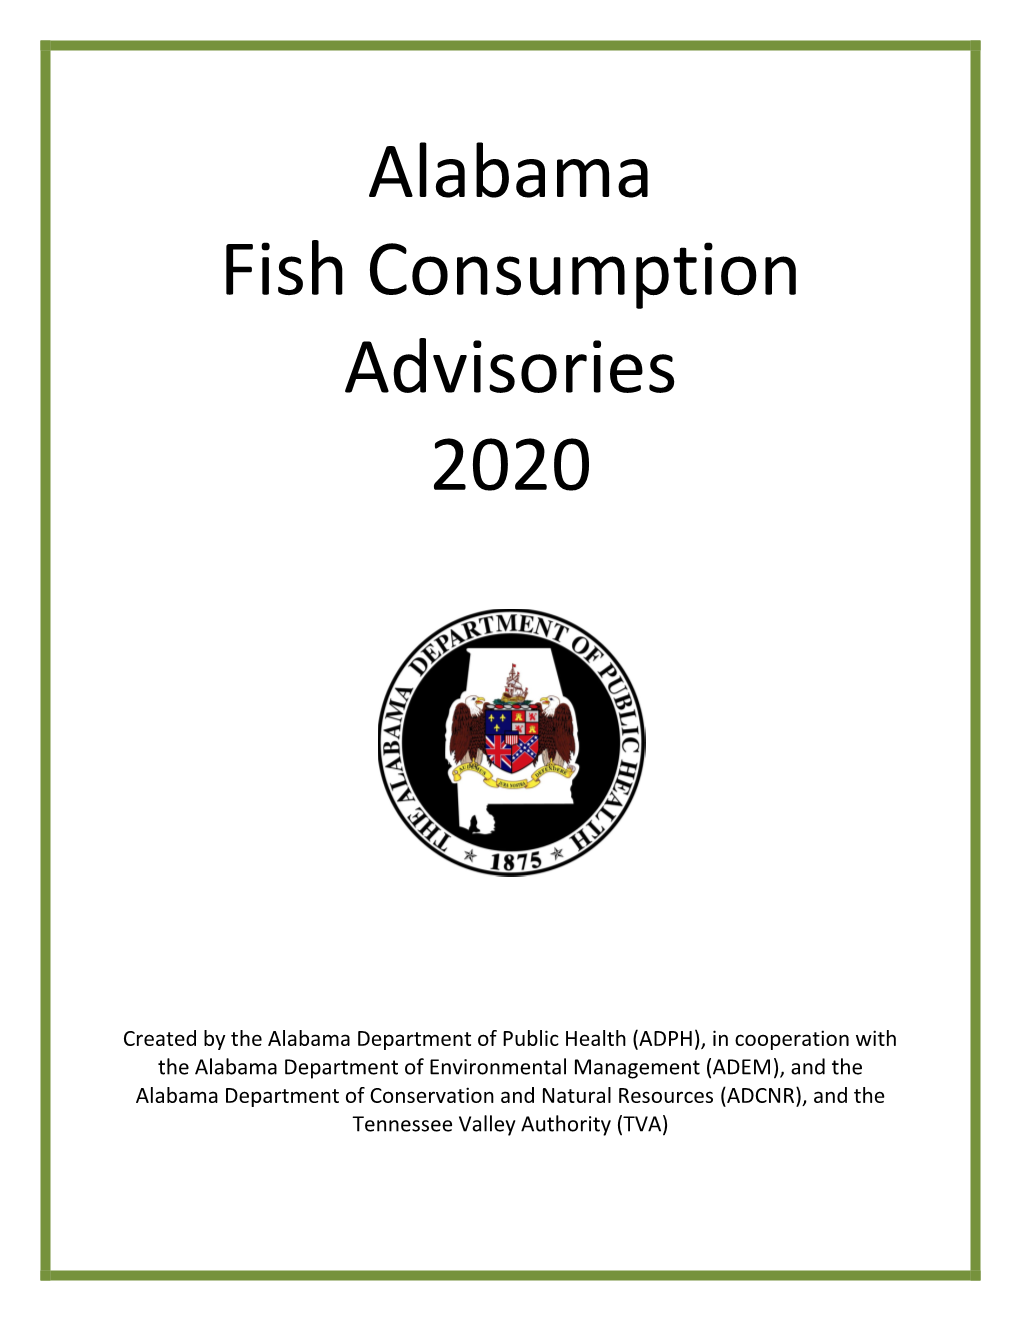 Alabama Fish Consumption Advisories 2020